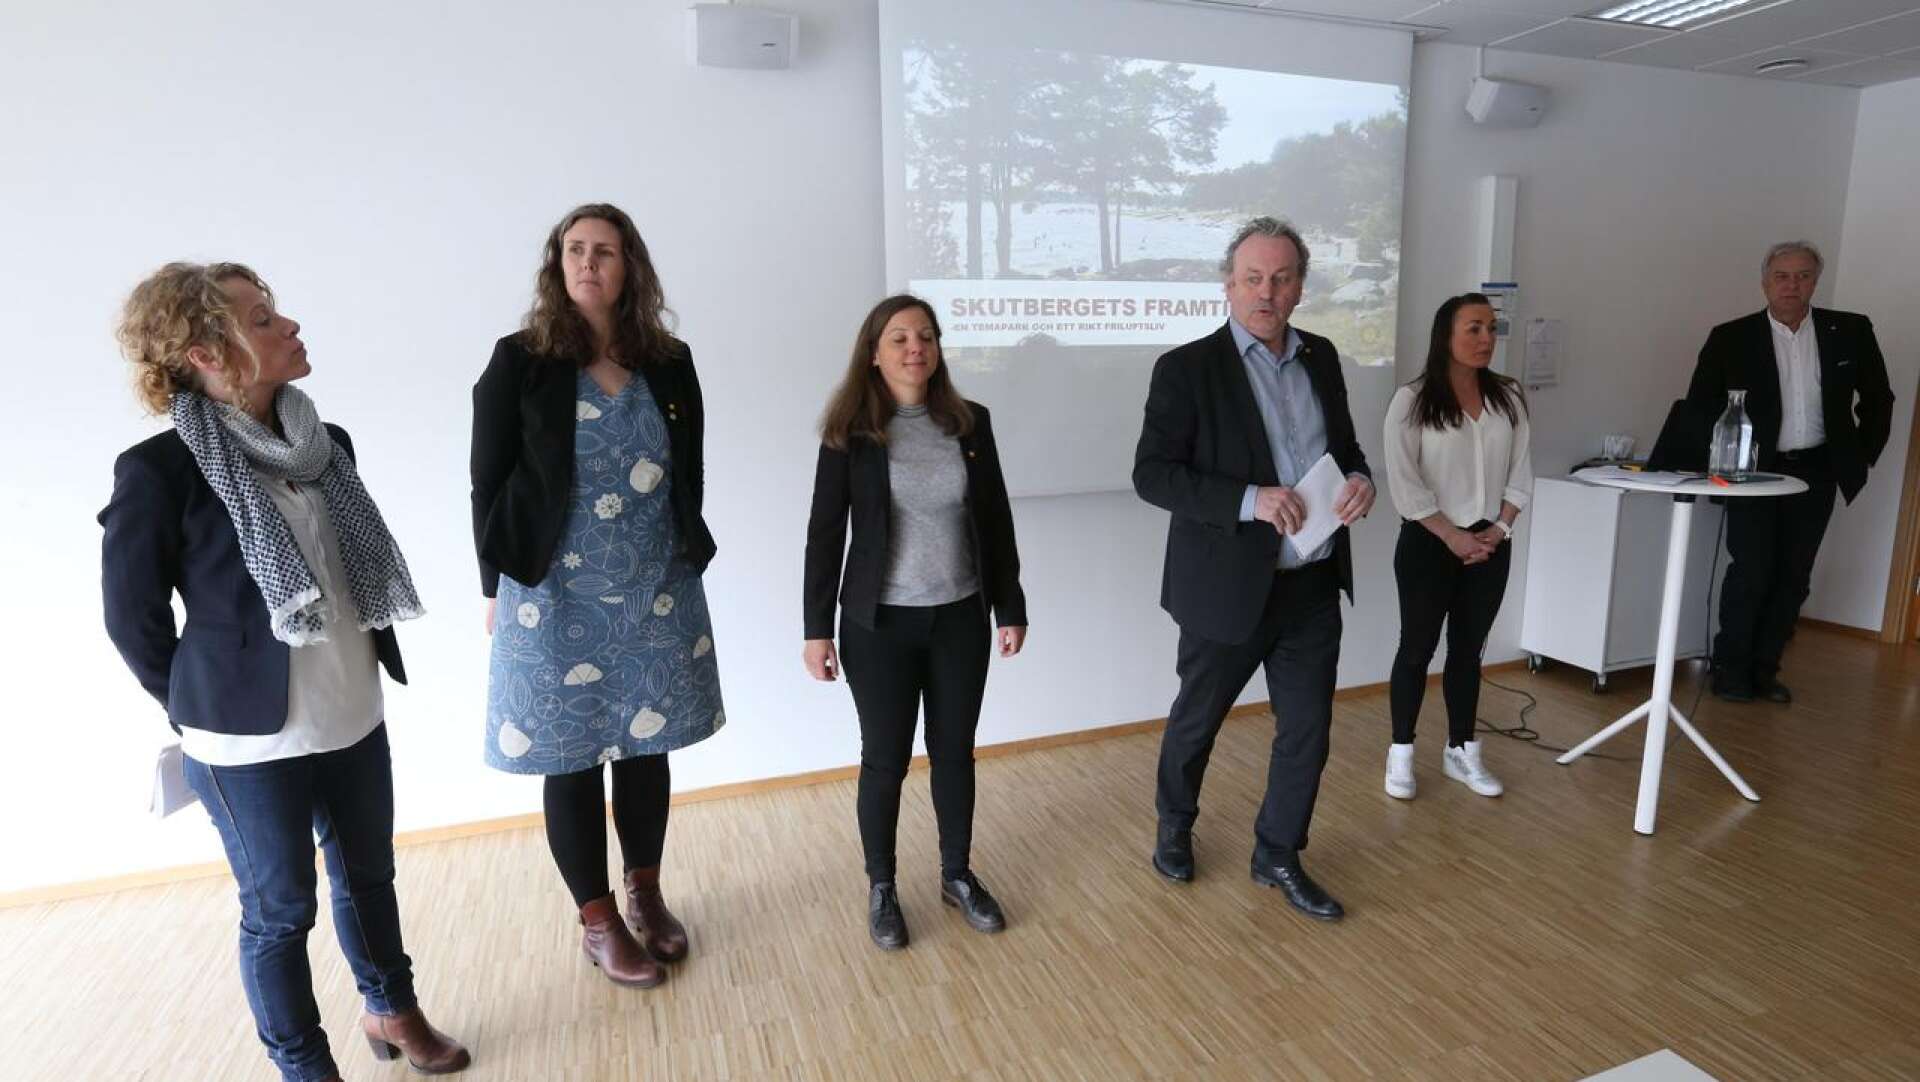 Karlstads kommun höll under tisdagen en pressträff för att berätta mer om hur man vill utveckla Skutbergets friluftsområde